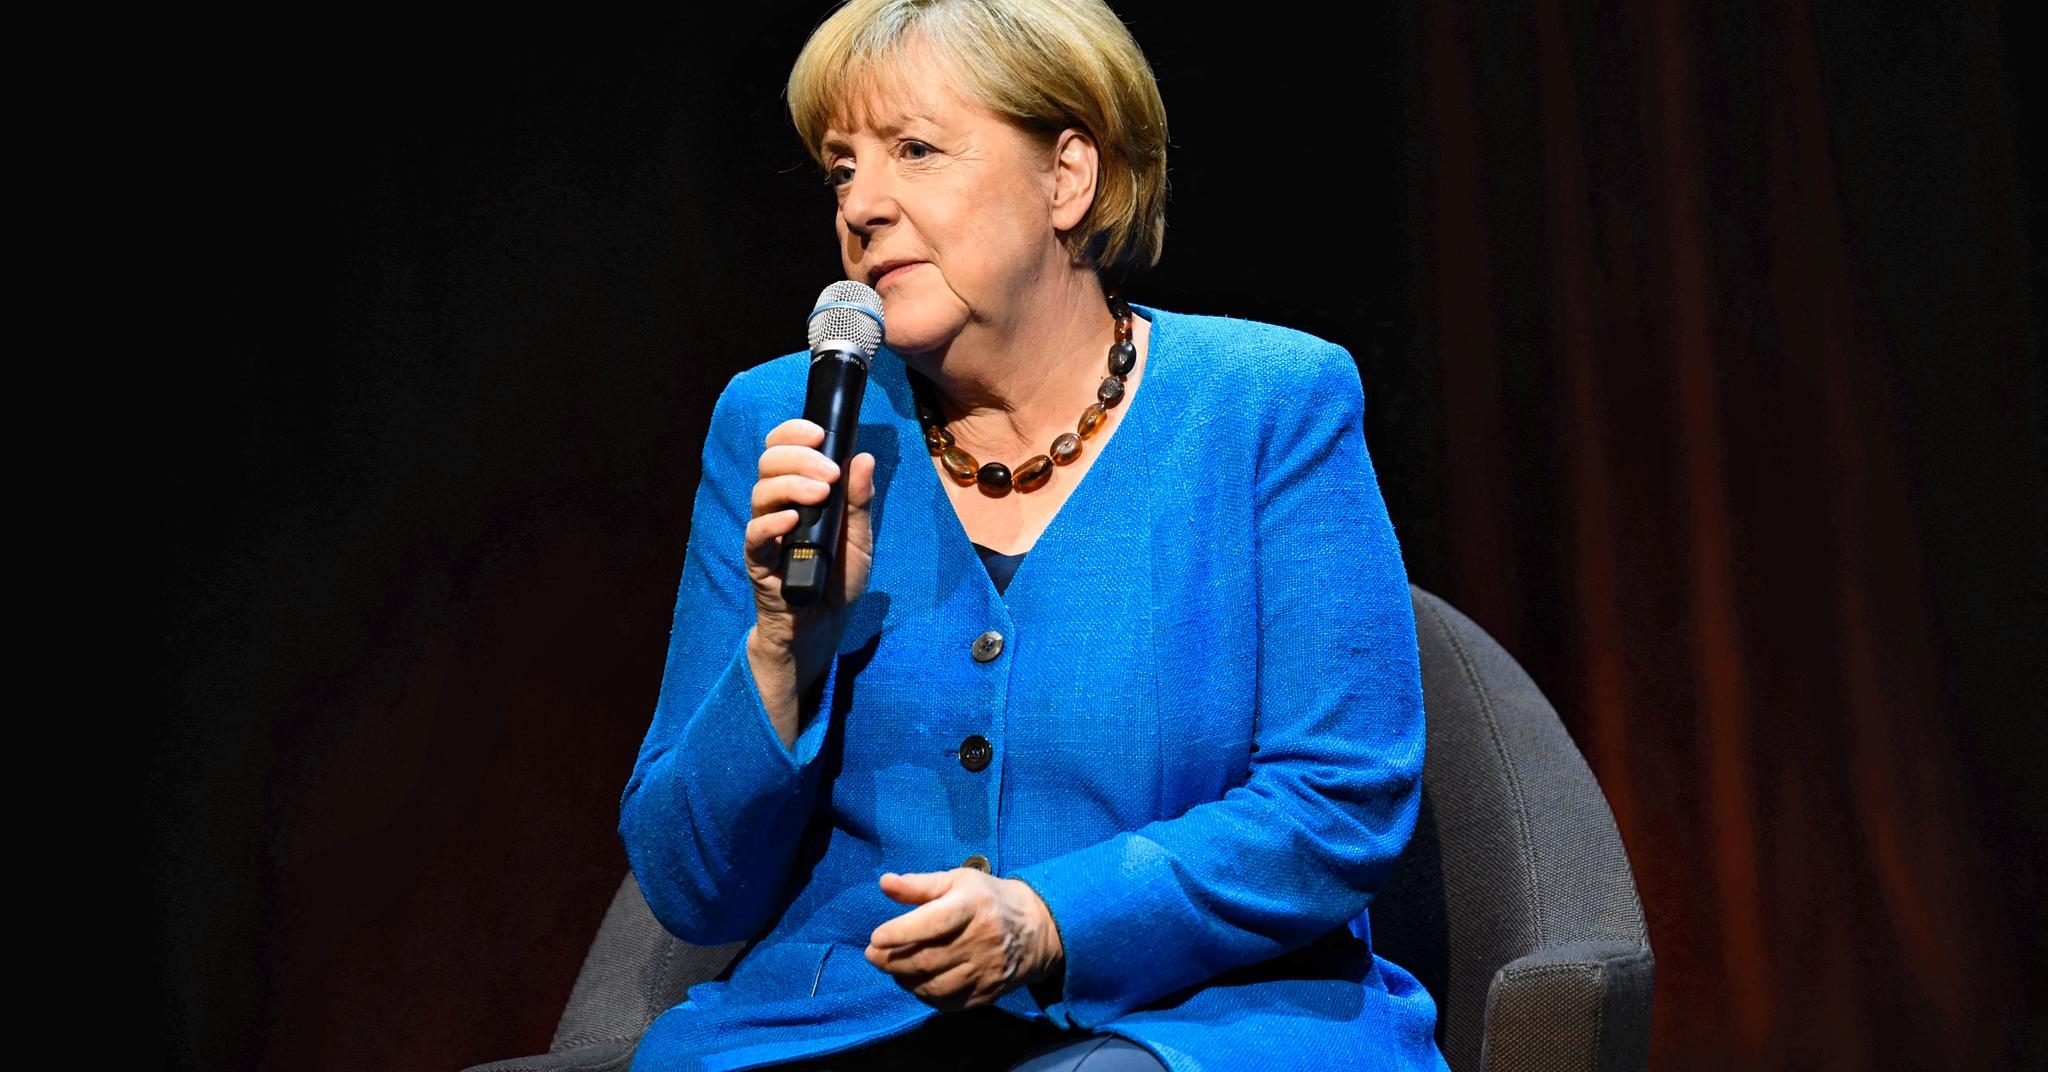 Angela Merkel har vært nesten helt taus siden hun gikk av som kansler, men tirsdag grep hun mikrofonen igjen.